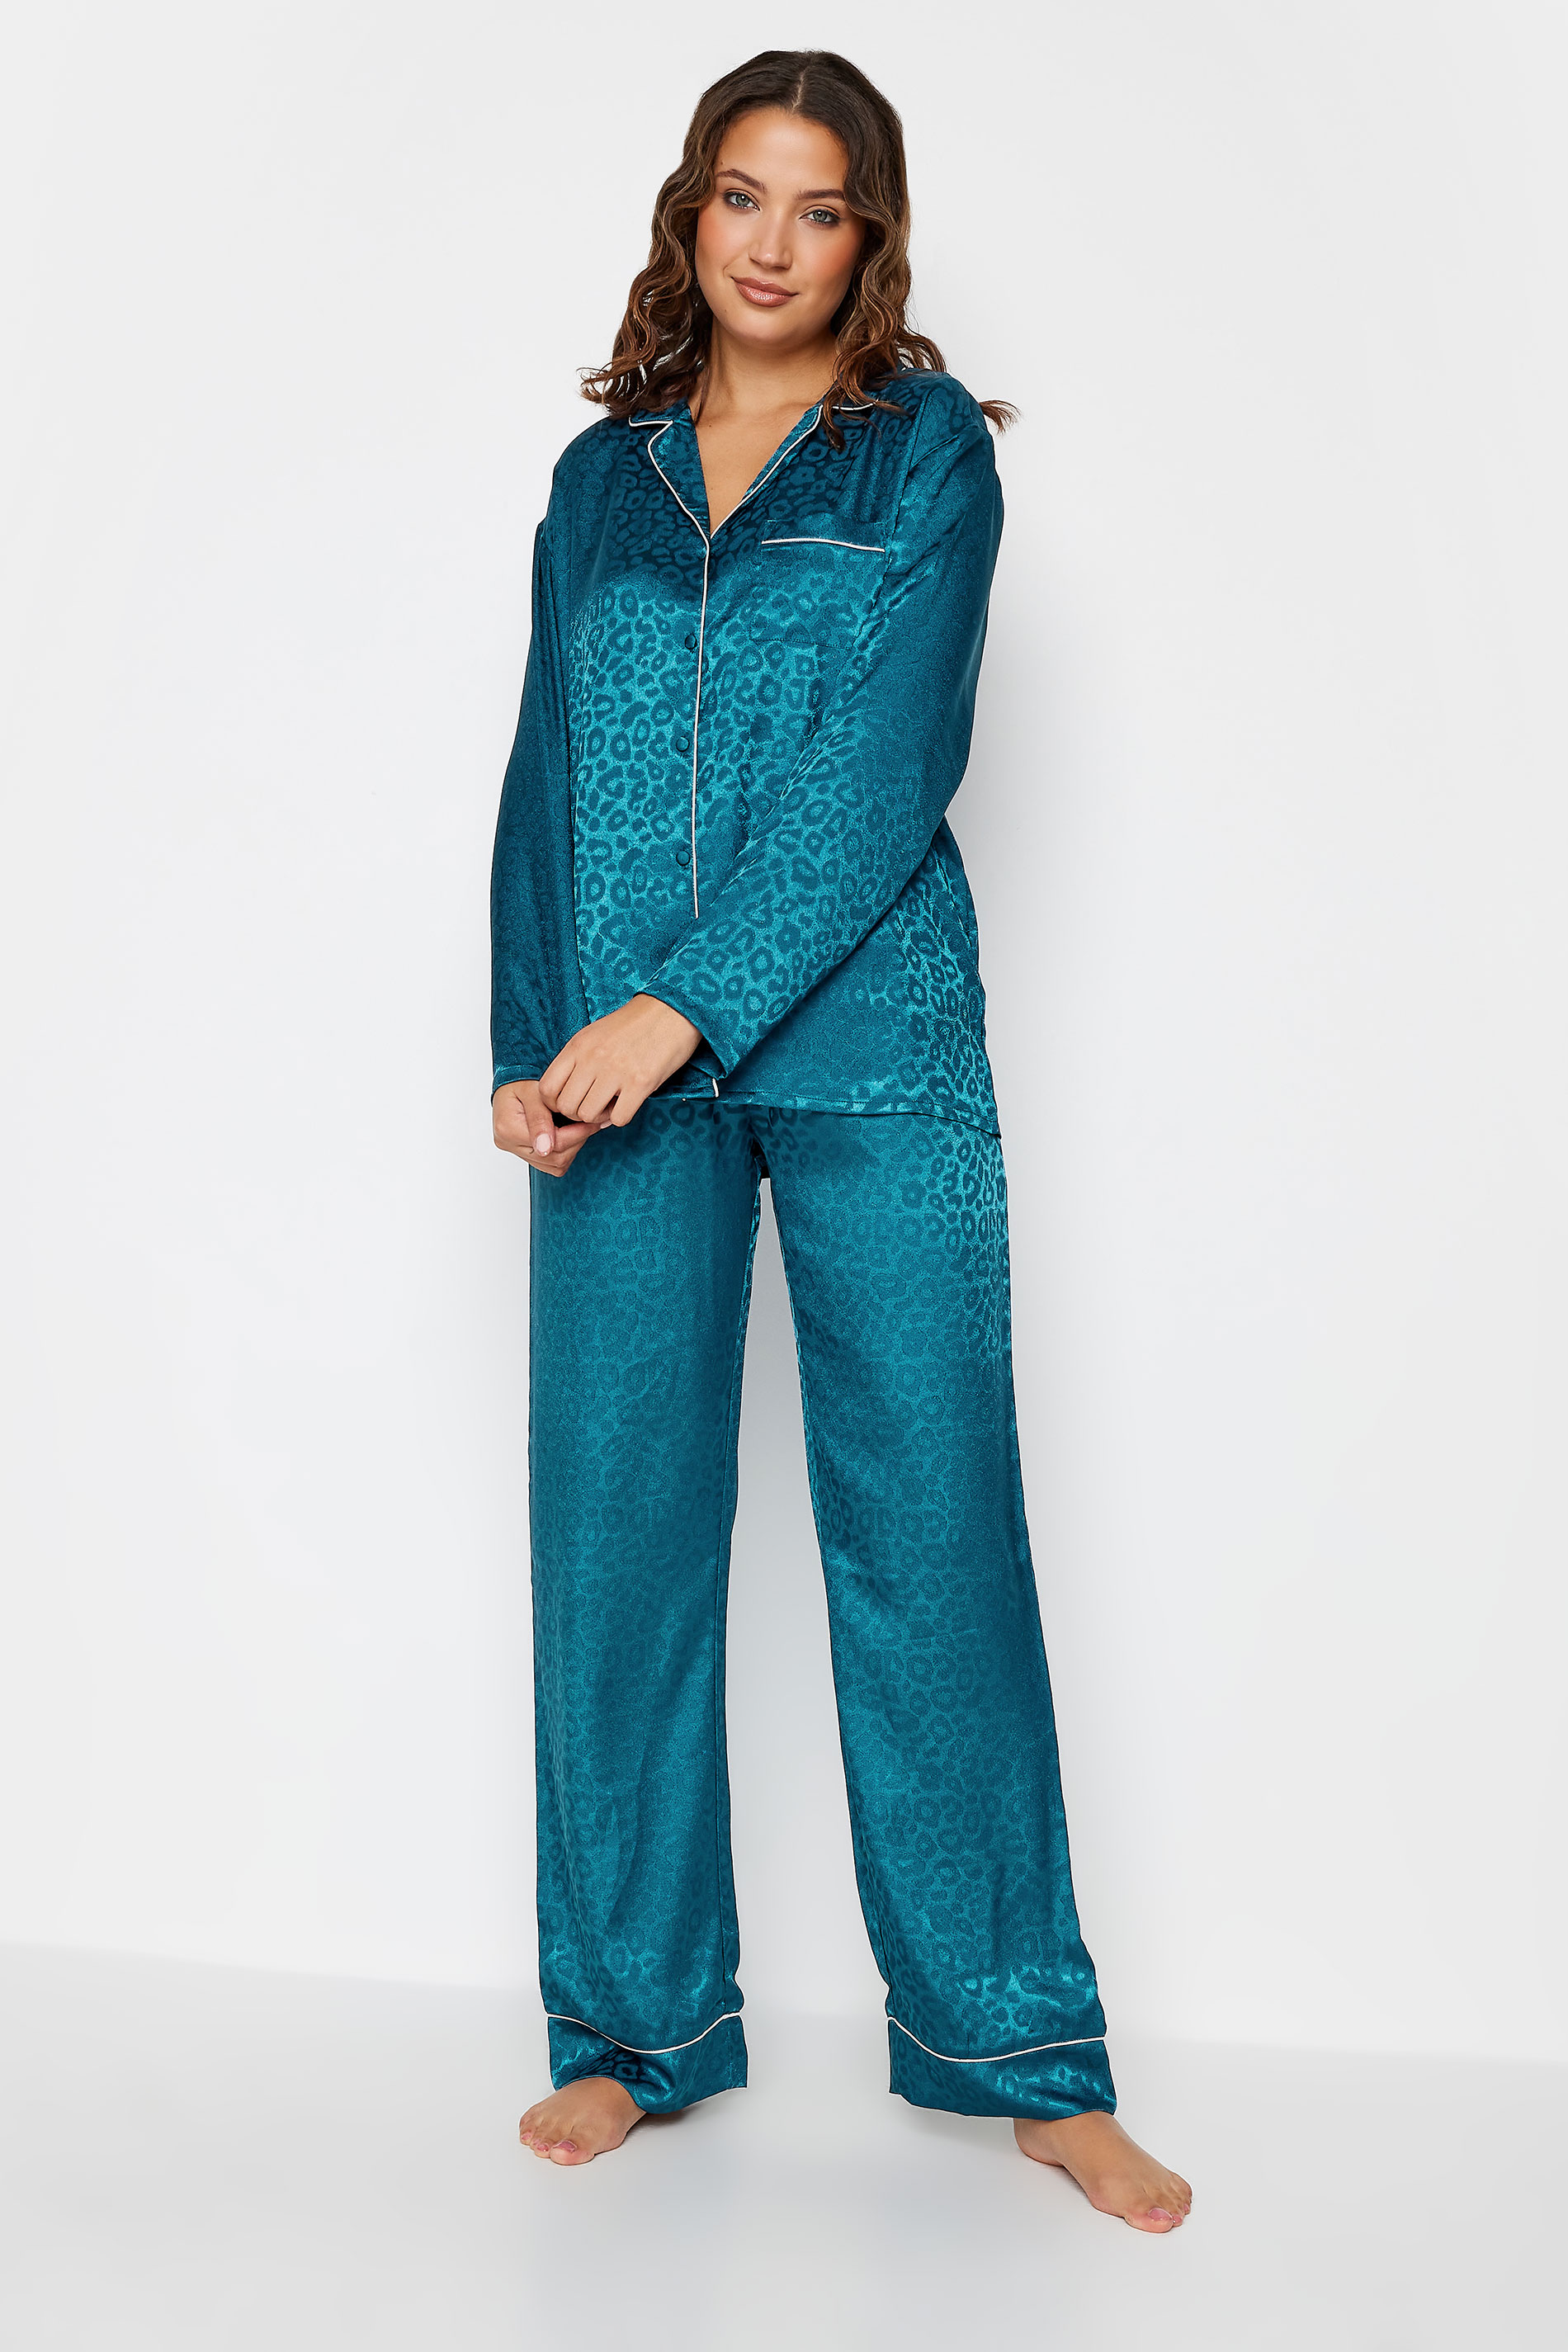 LTS Tall Women's Teal Blue Leopard Print Satin Pyjama Set | Long Tall Sally 3